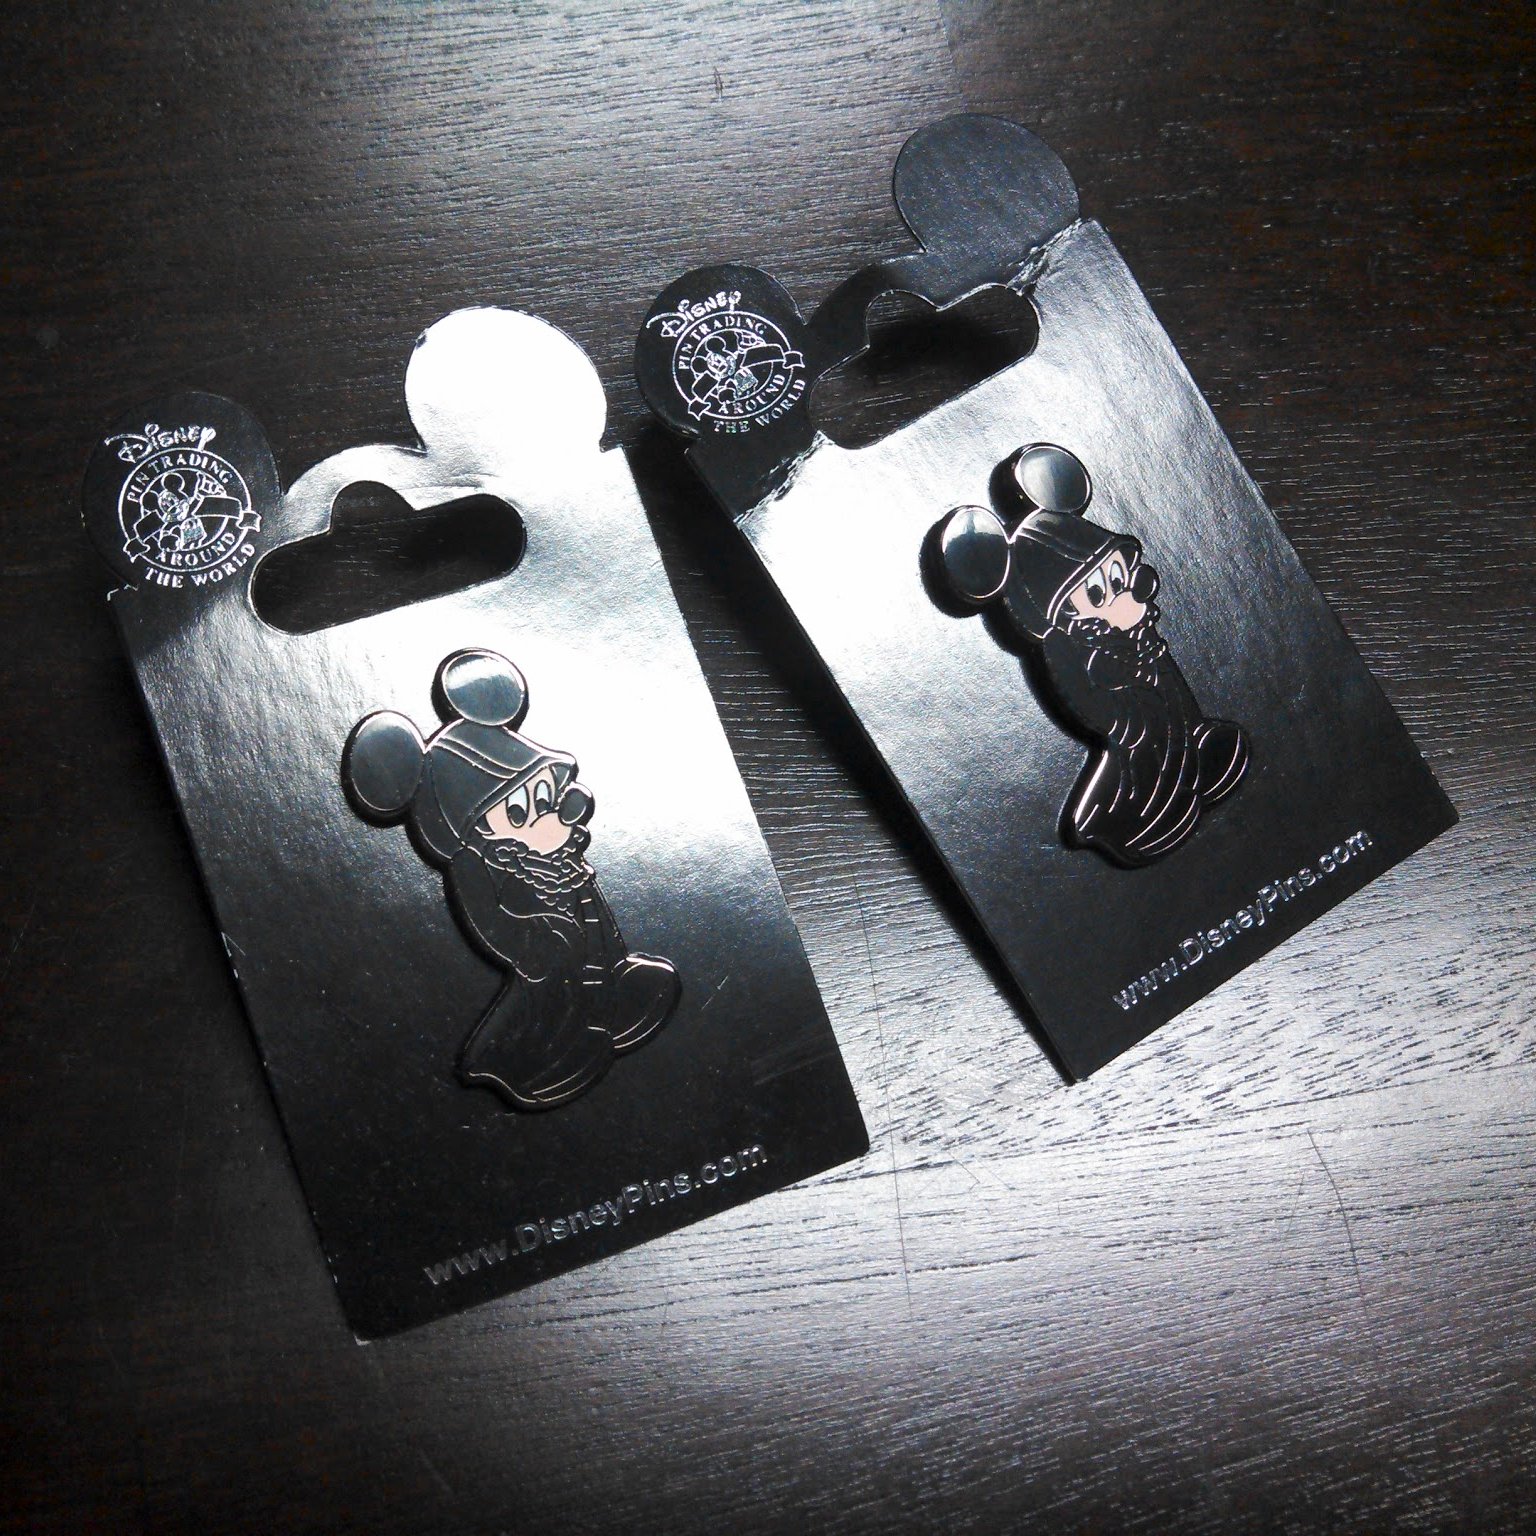 Kingdom Hearts Lanyard Pin Set at SDCC 2018 - Disney Pins Blog